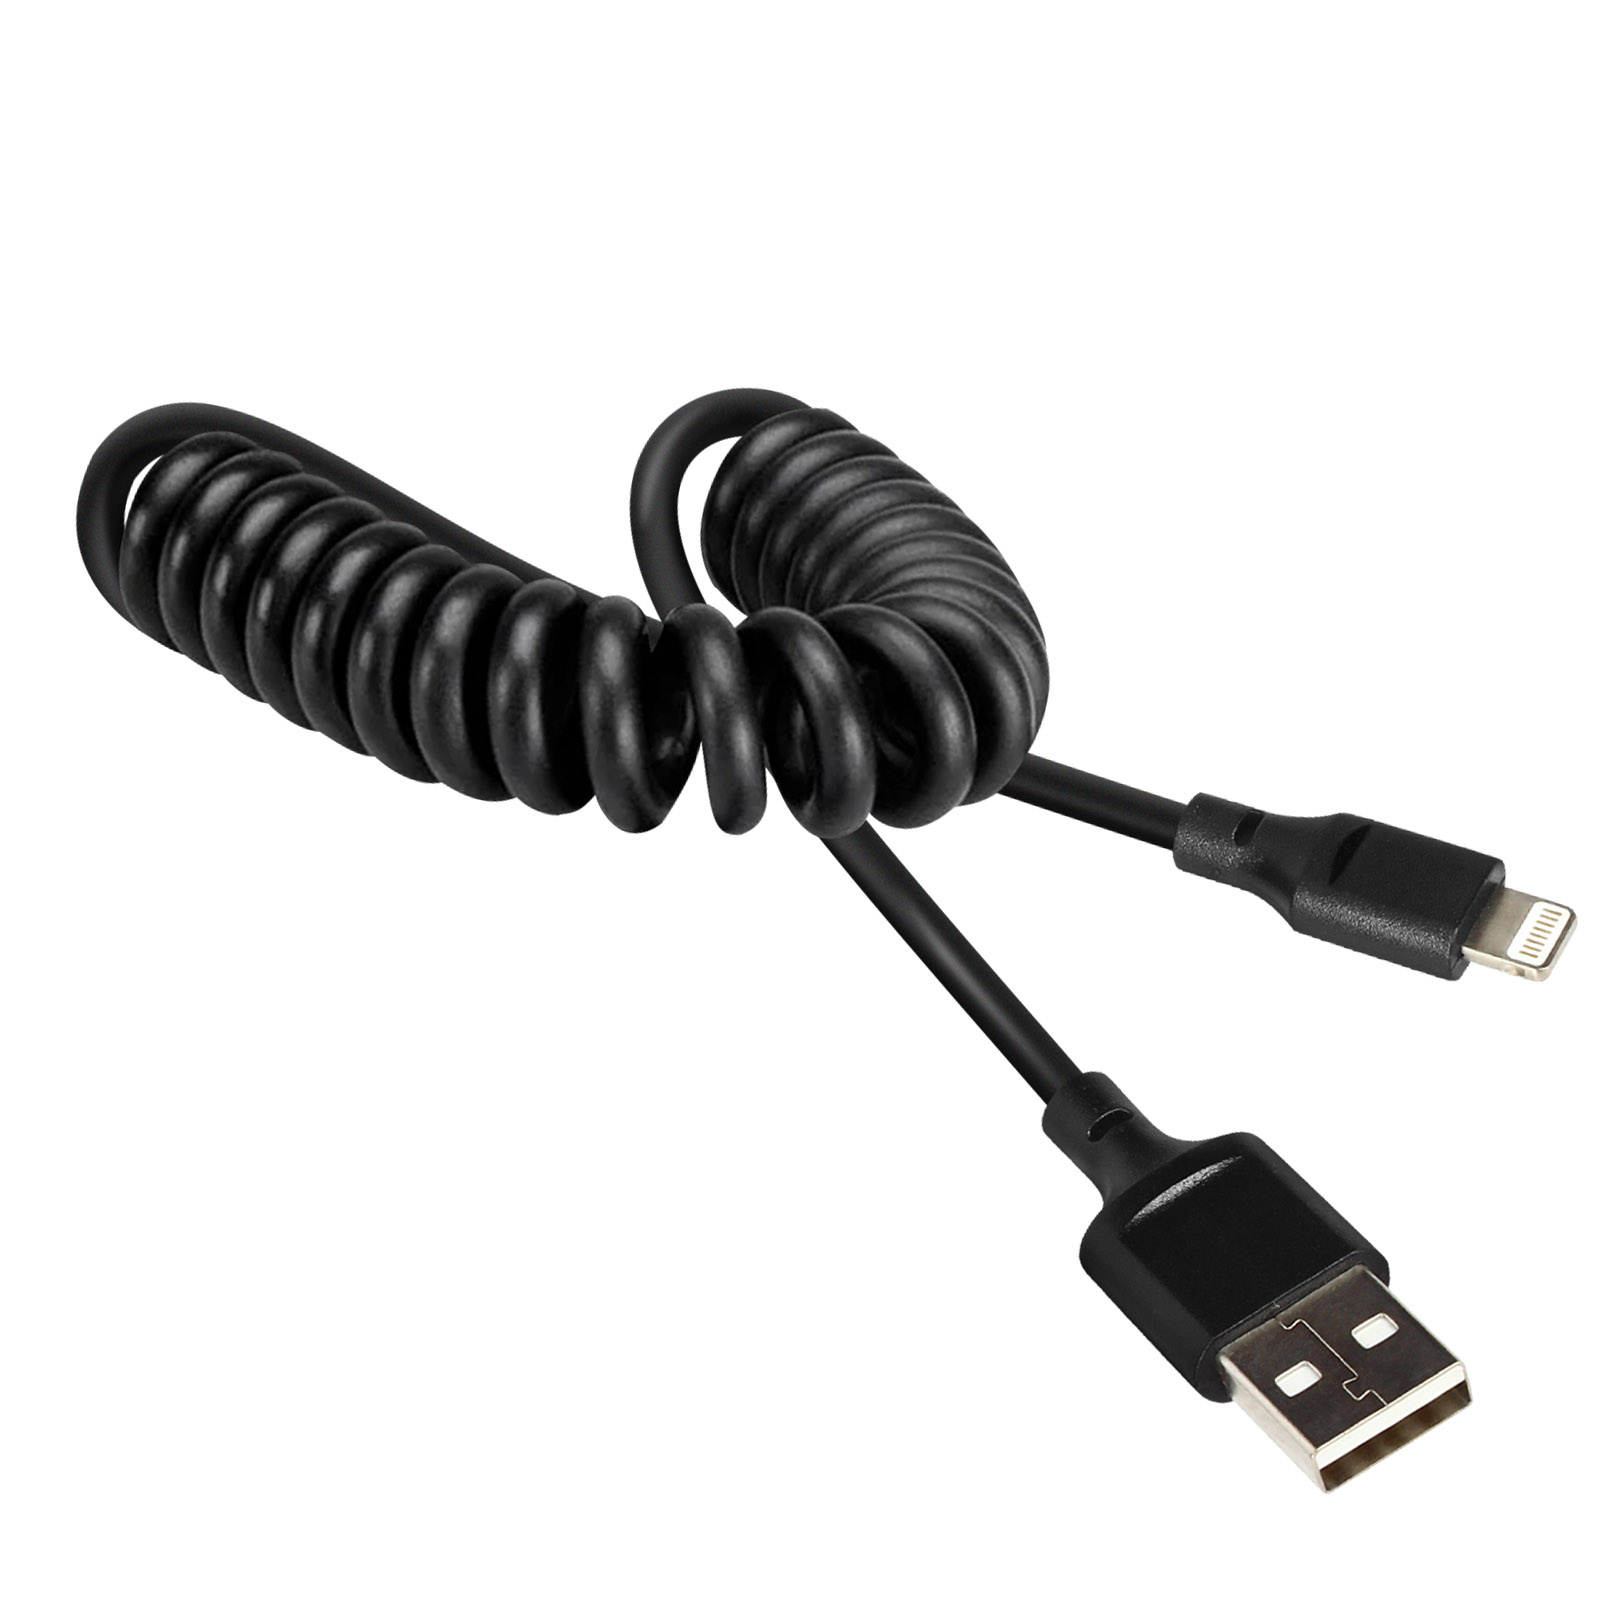 Lightning USB / 2.4A USB-Kabel AVIZAR